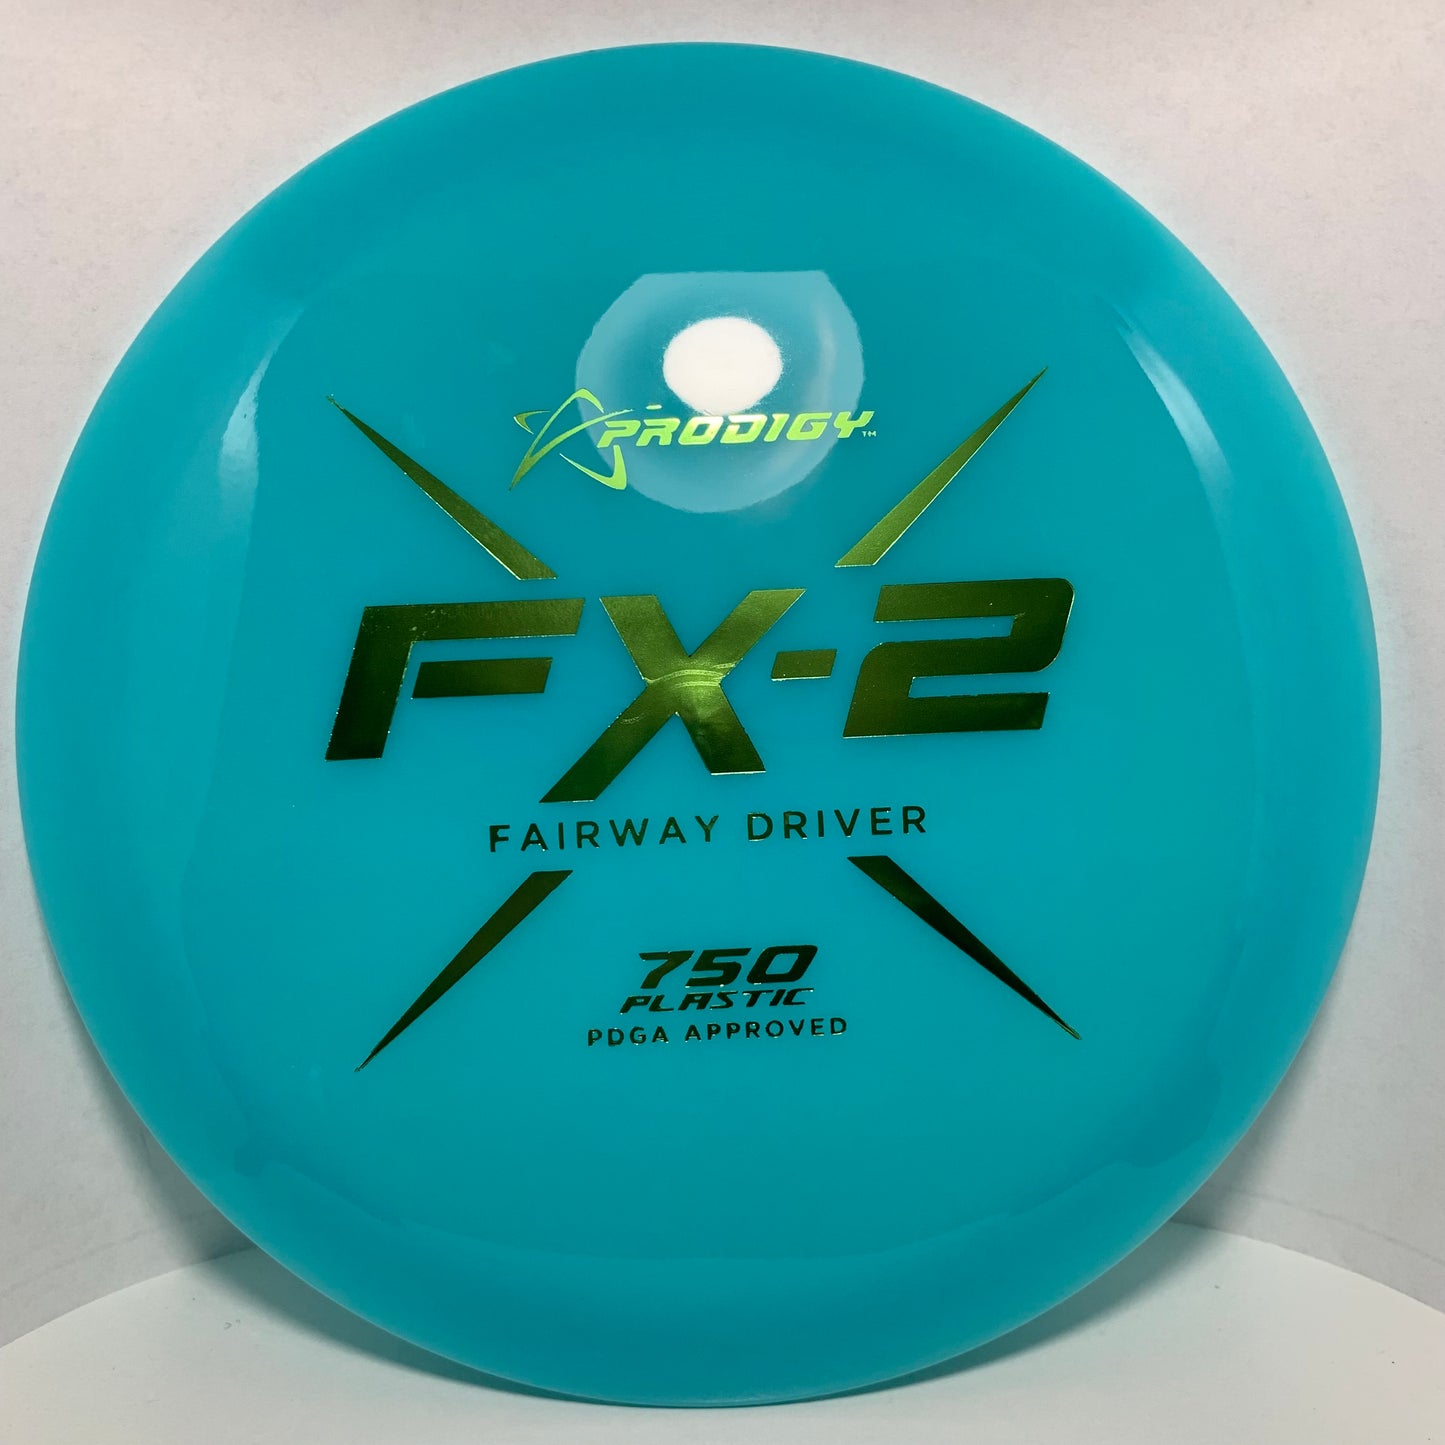 FX-2 - 750